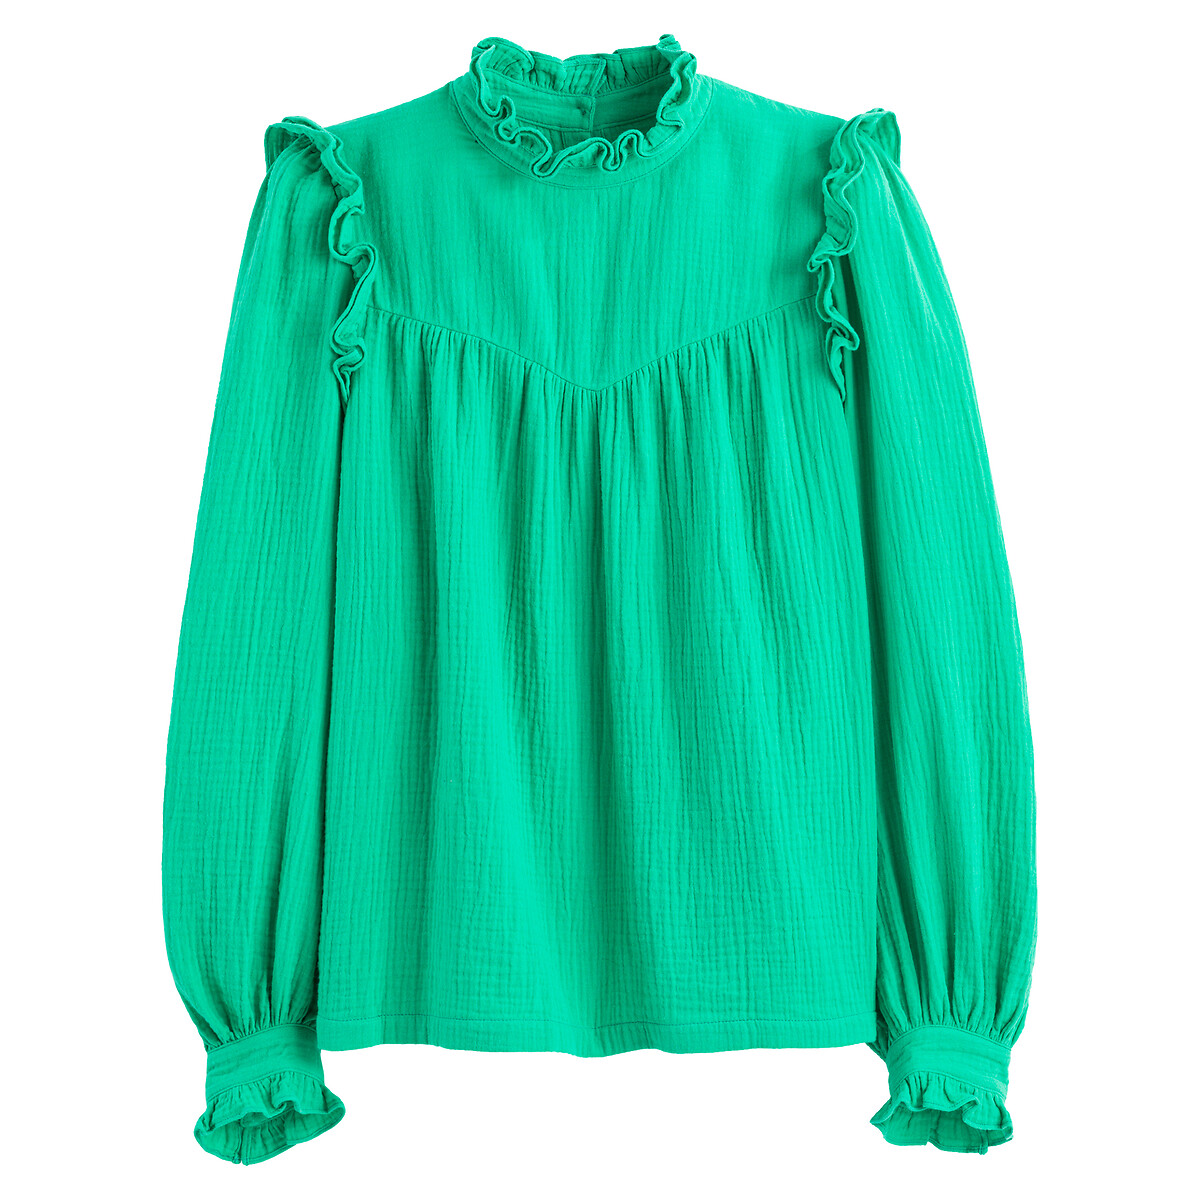 Блузка С воротником-стойкой с воланом длинные рукава 46 (FR) - 52 (RUS) зеленый LaRedoute, размер 46 (FR) - 52 (RUS) Блузка С воротником-стойкой с воланом длинные рукава 46 (FR) - 52 (RUS) зеленый - фото 5